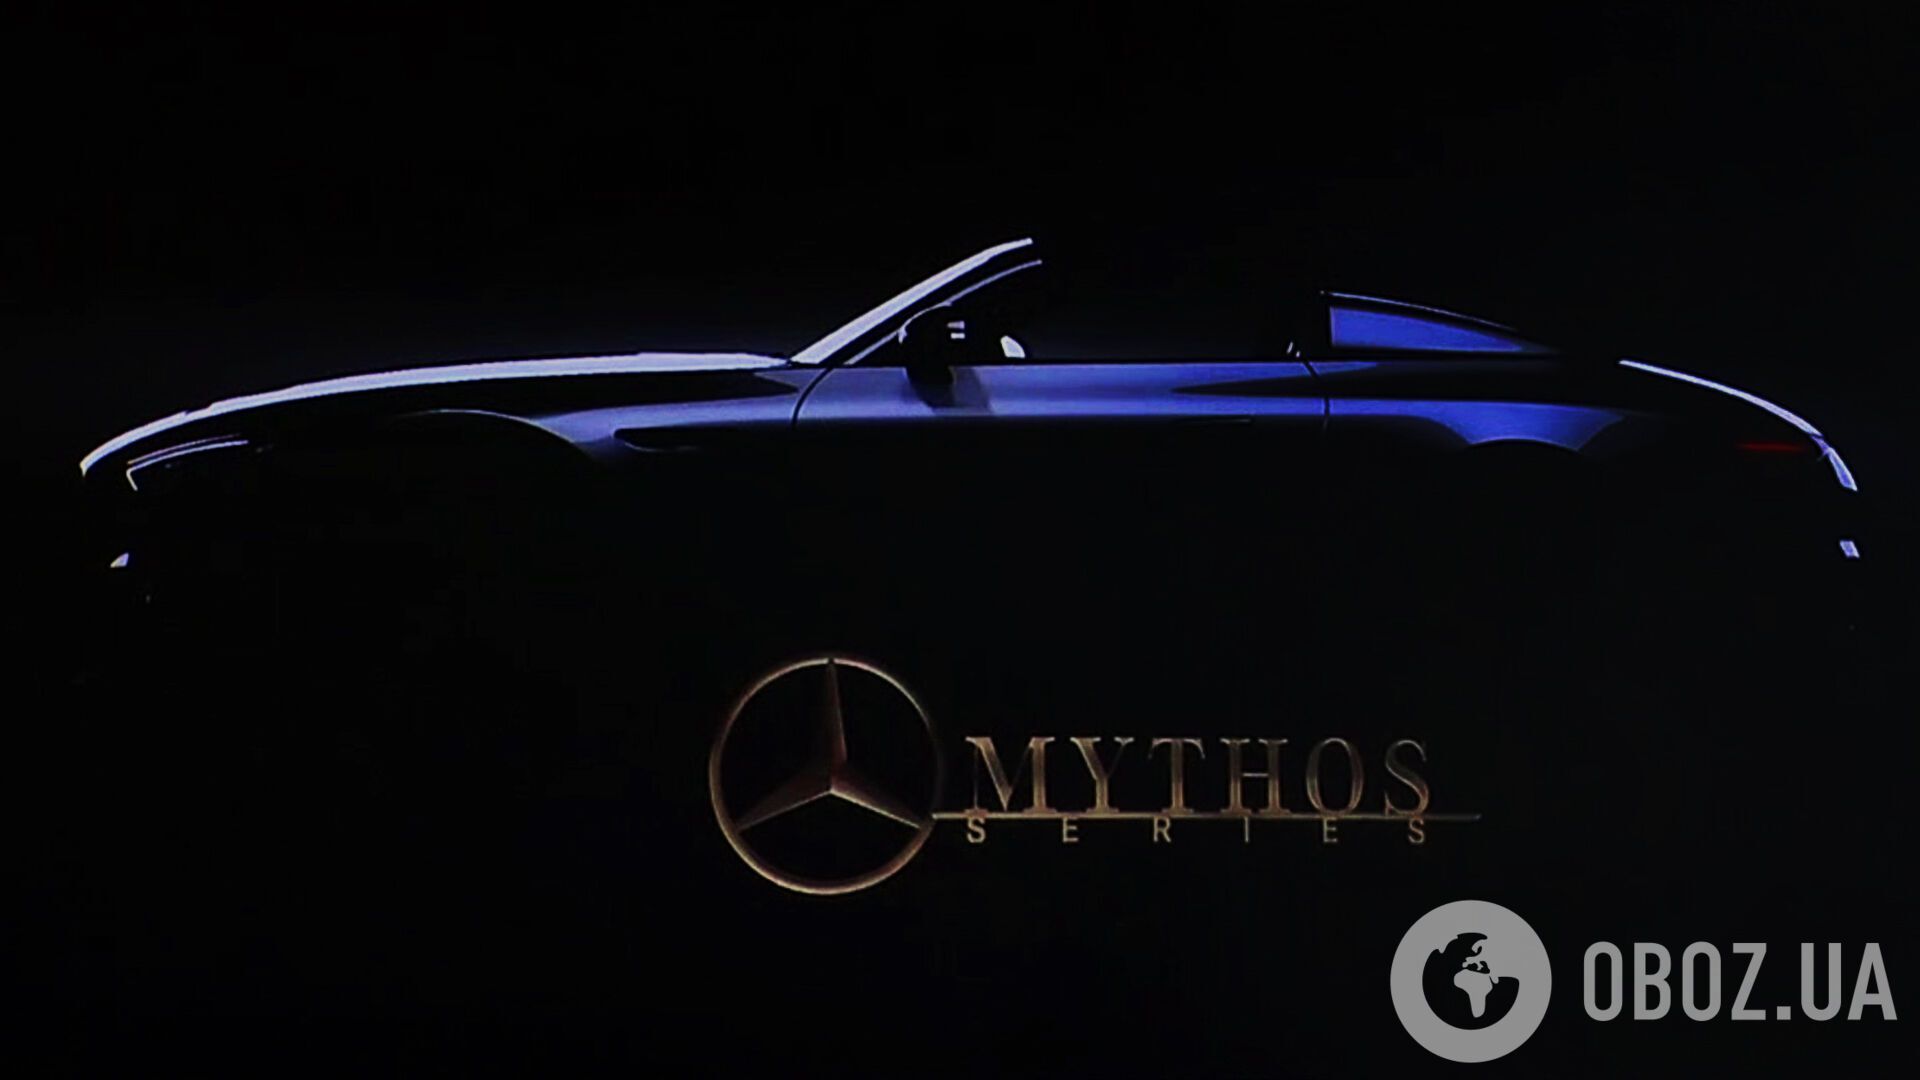 Под новым брендом Mythos будут выпускаться модели лимитированных серий для коллекционеров и ценителей марки, а первым представителем семейства станет SL Speedster